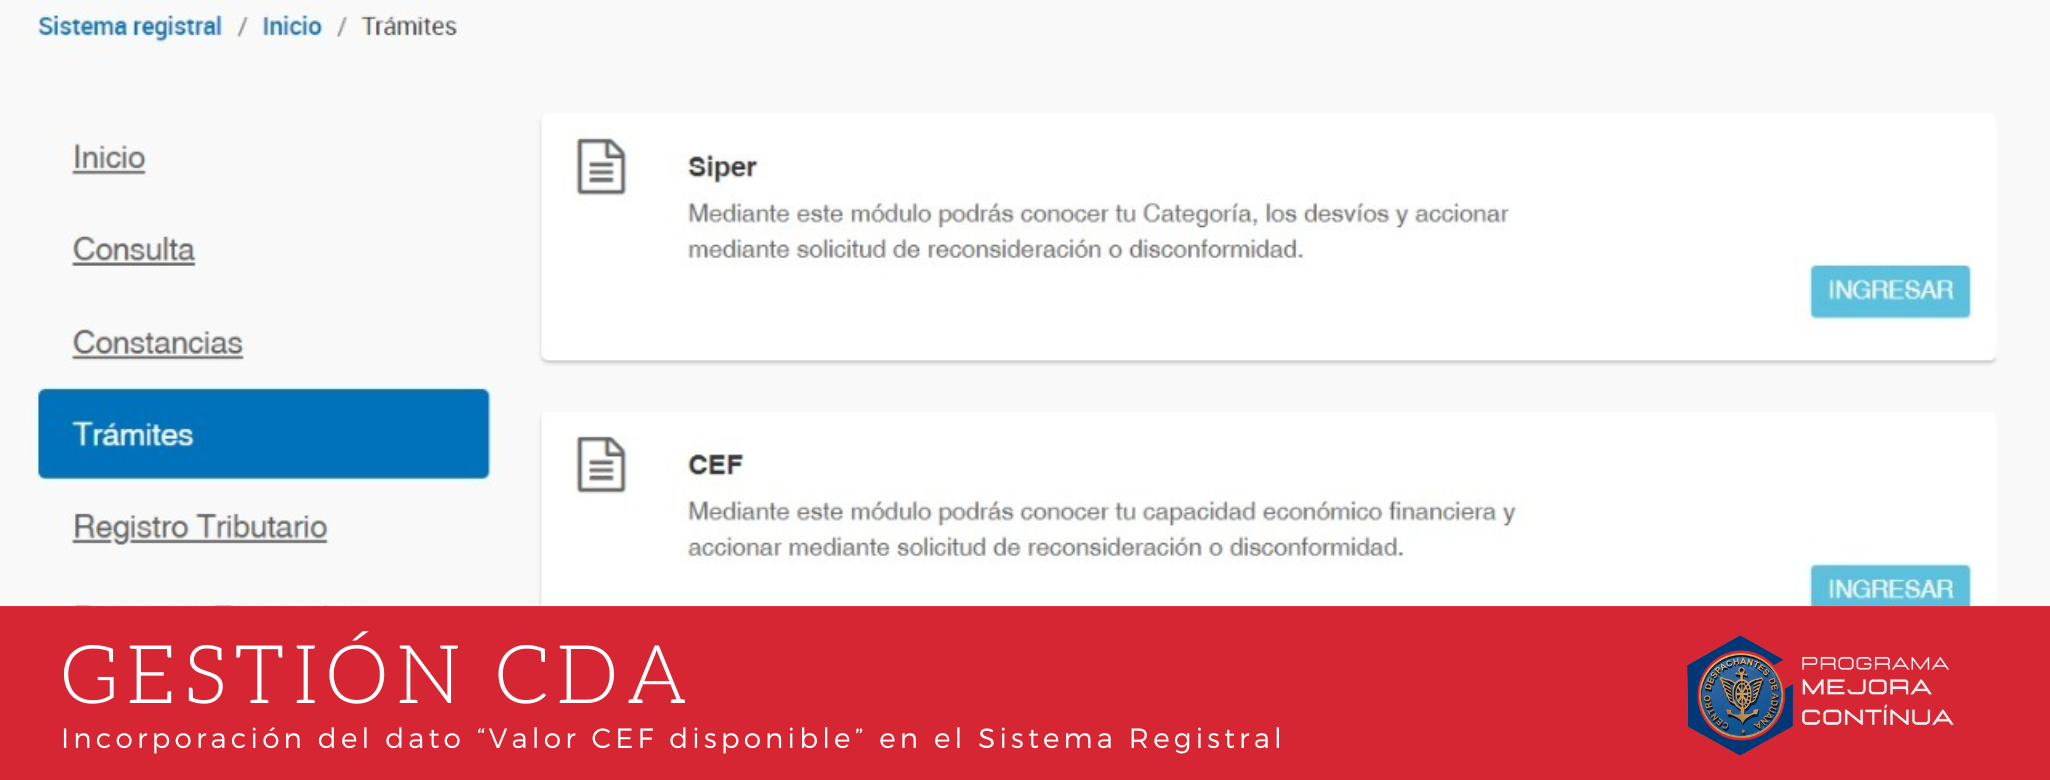 GESTIÓN CDA: Incorporación del dato “Valor CEF disponible” en el Sistema Registral